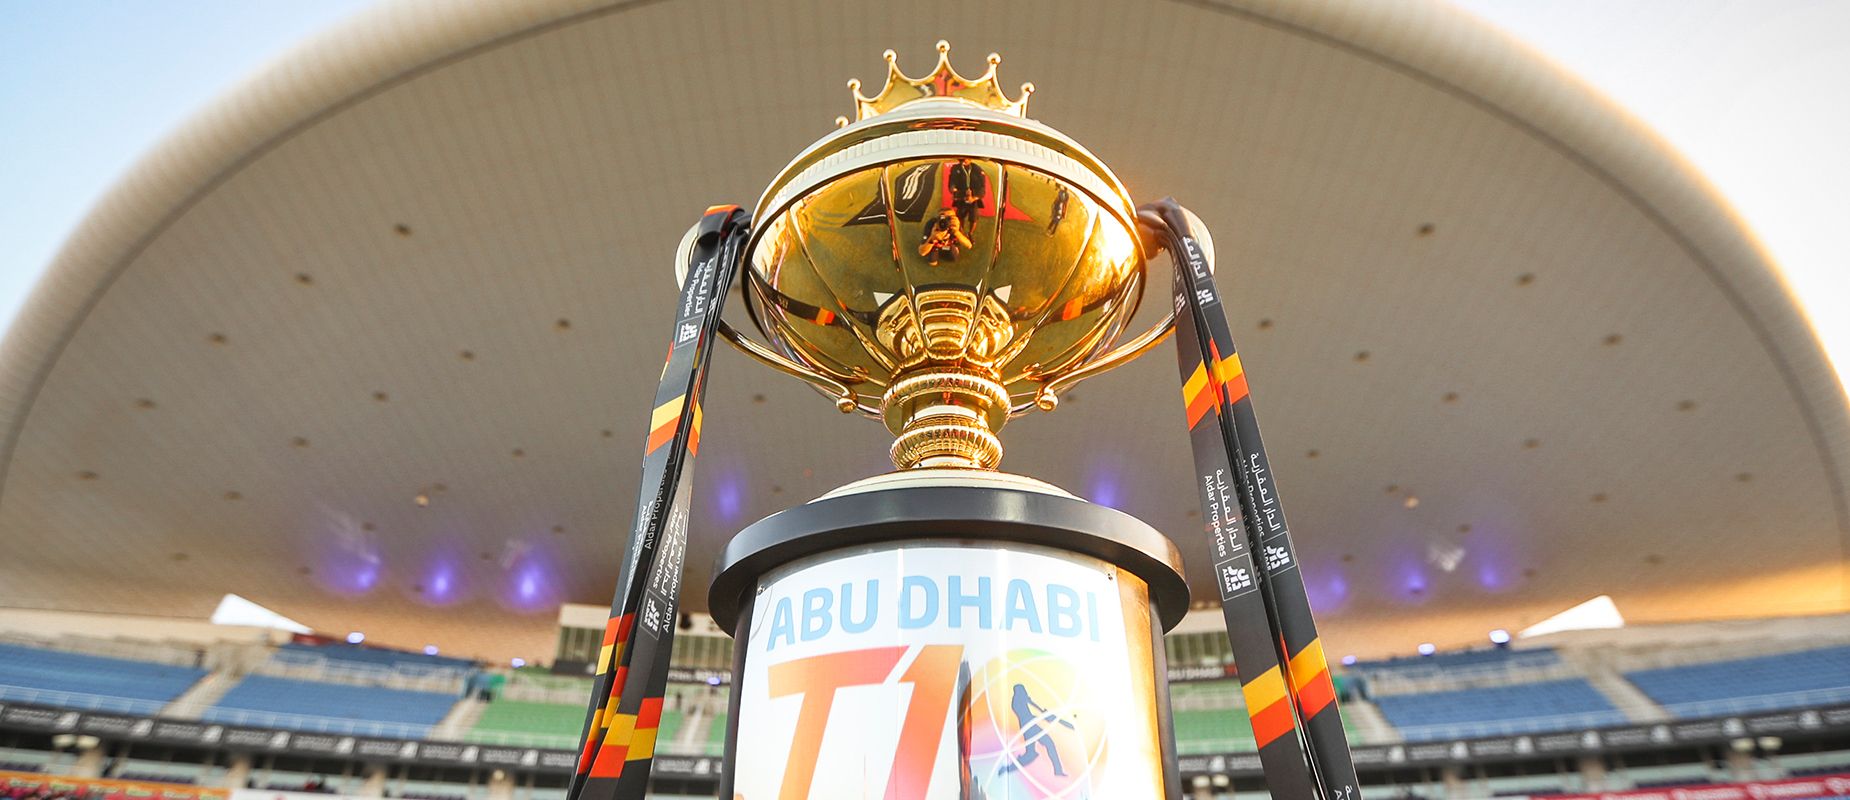 Abu Dhabi T10 2021 trophy